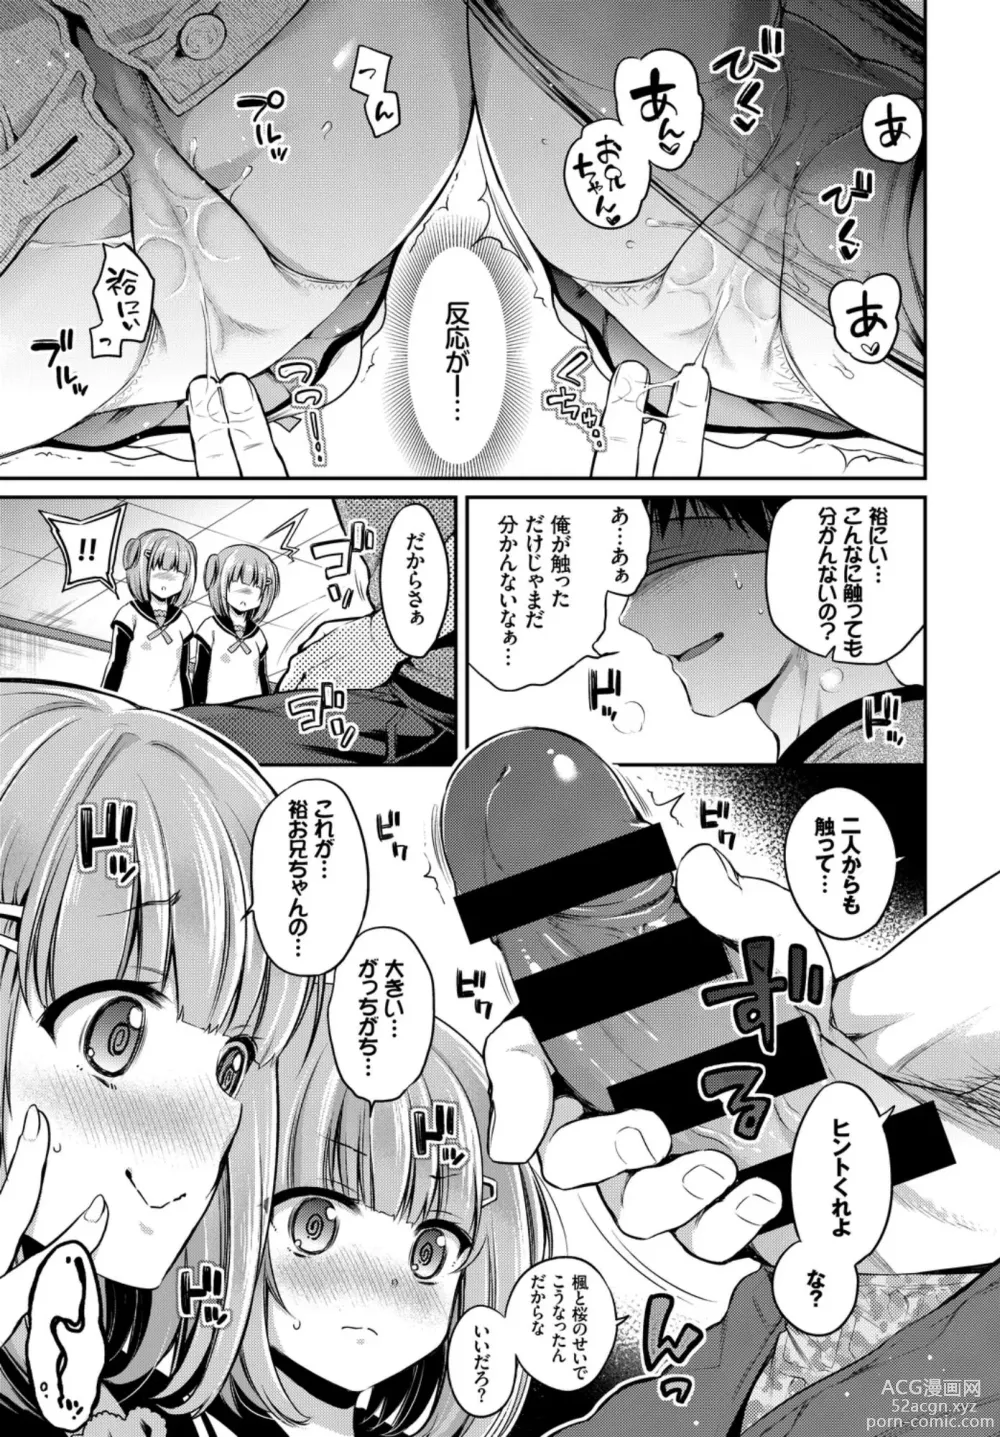 Page 11 of manga Oppai Sand de Shouten Shichao VOL. 2 ~Futago Hen~